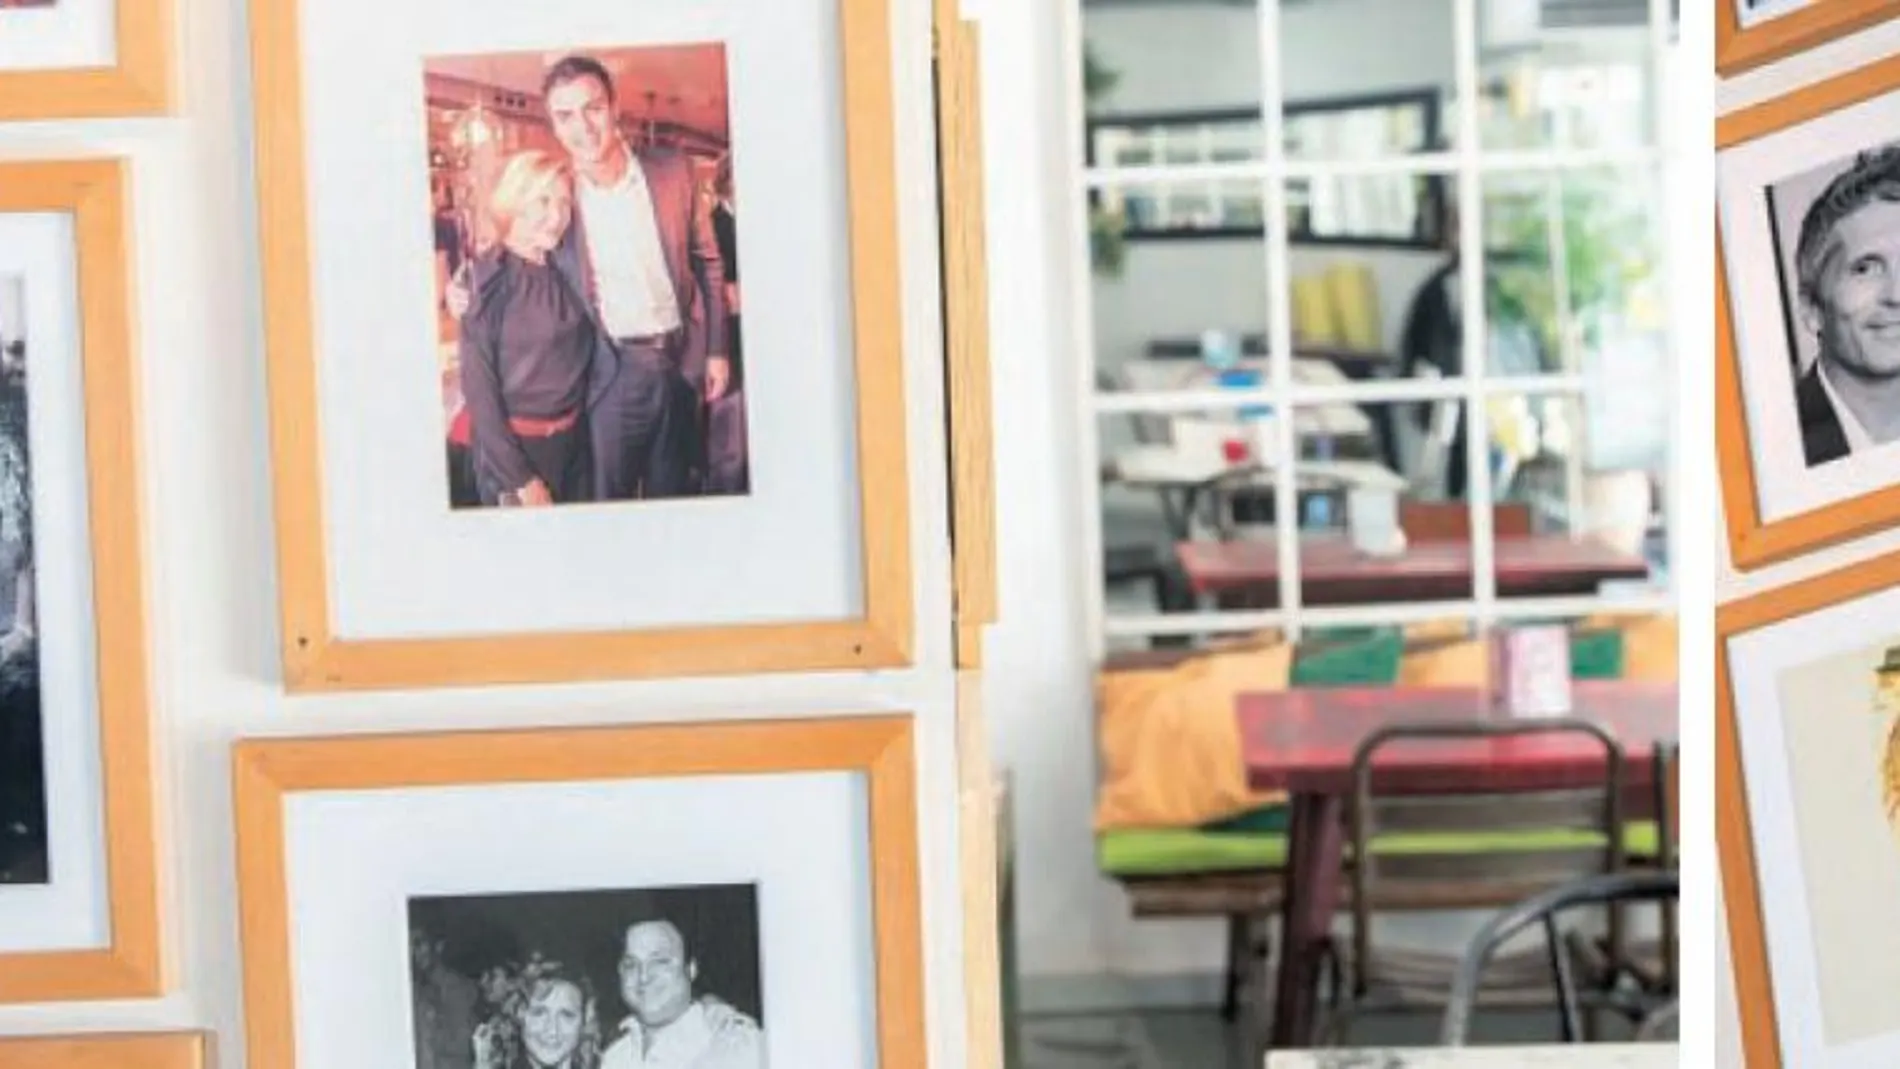 Los retratos de Pedro Sánchez (arriba) y el ministro Grande-Marlaska cuelgan en las paredes del bar restaurante de Chueca / Gonzalo Pérez